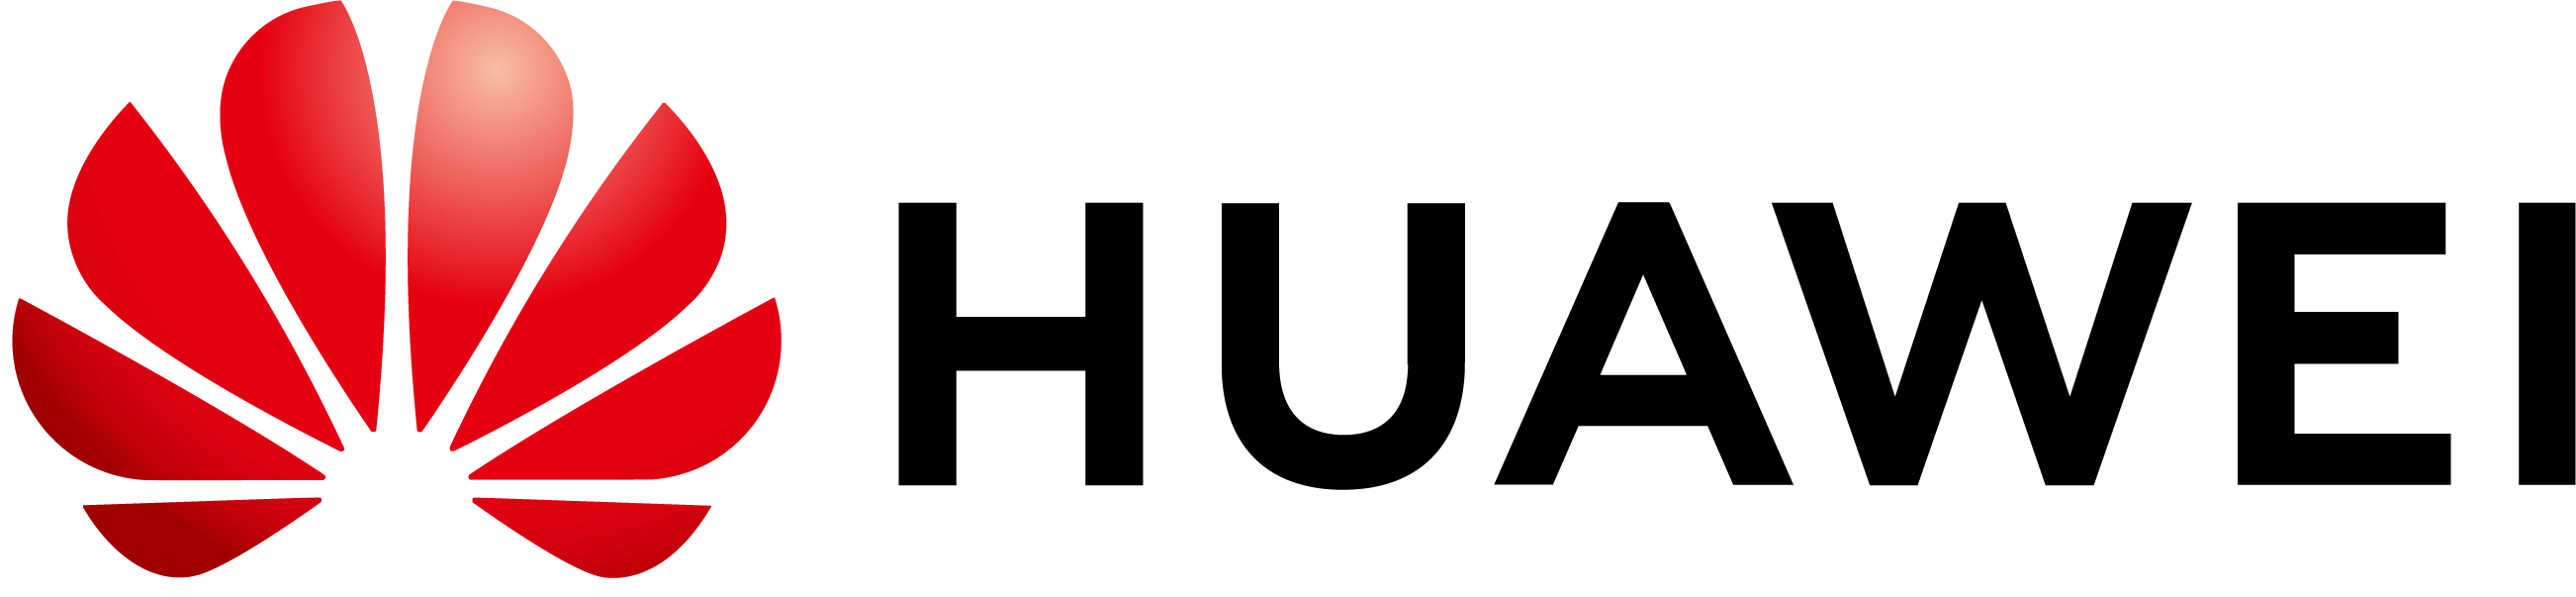 logo de https://zcmike.github.io/alex-pwa/